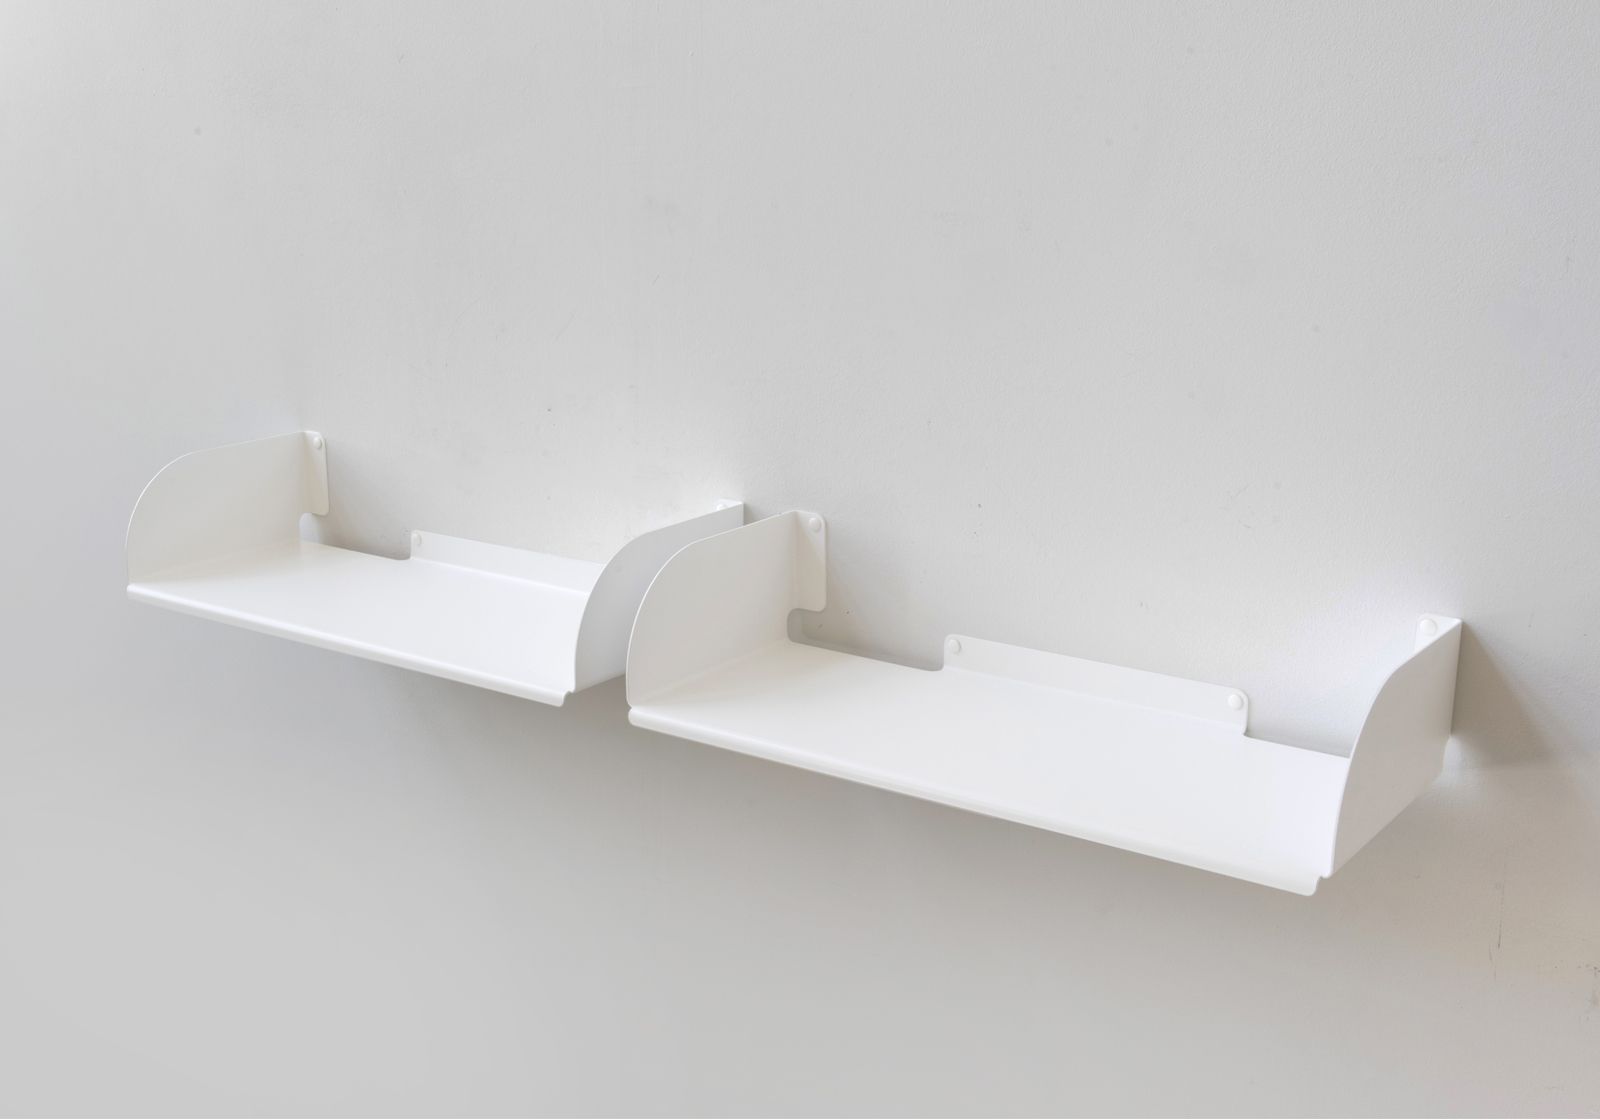 Floating shelves "UBD" - Set of 2 - 23 inch